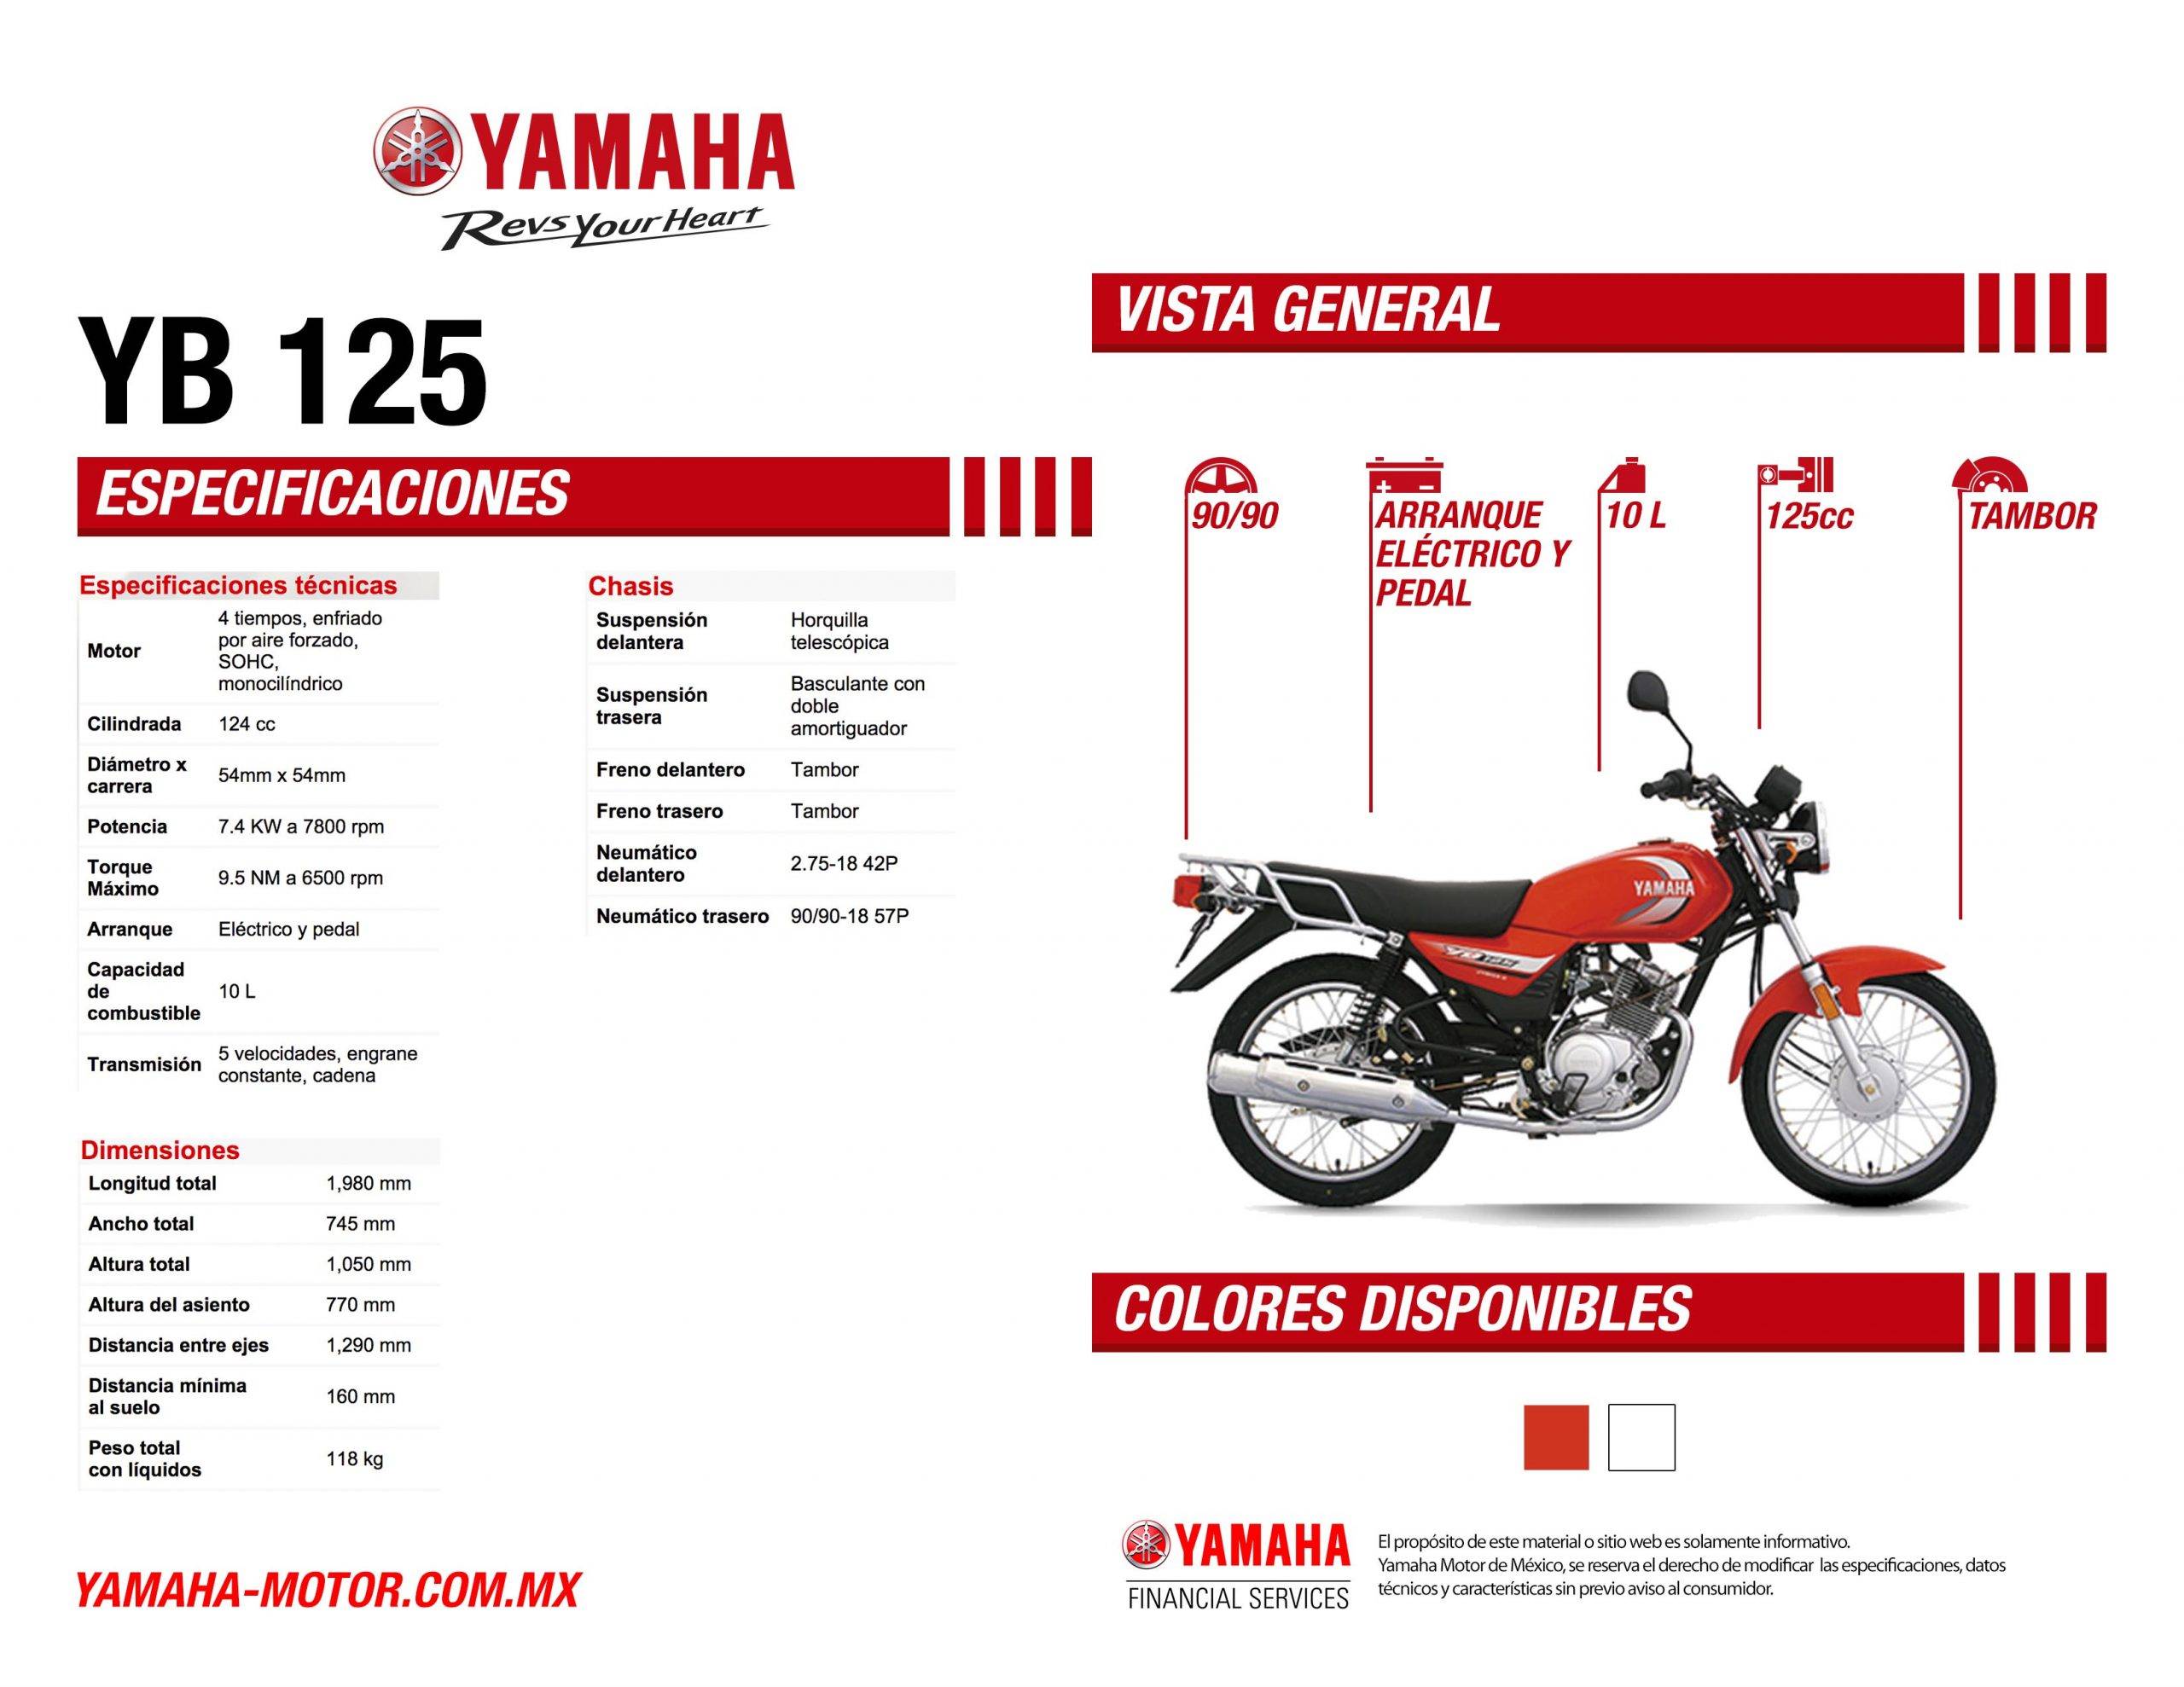 Gia Ban Yamaha Xsr 155. Yamaha Punya Motor Retro Yamaha Cuma Rp18 Jutaan, Yamaha